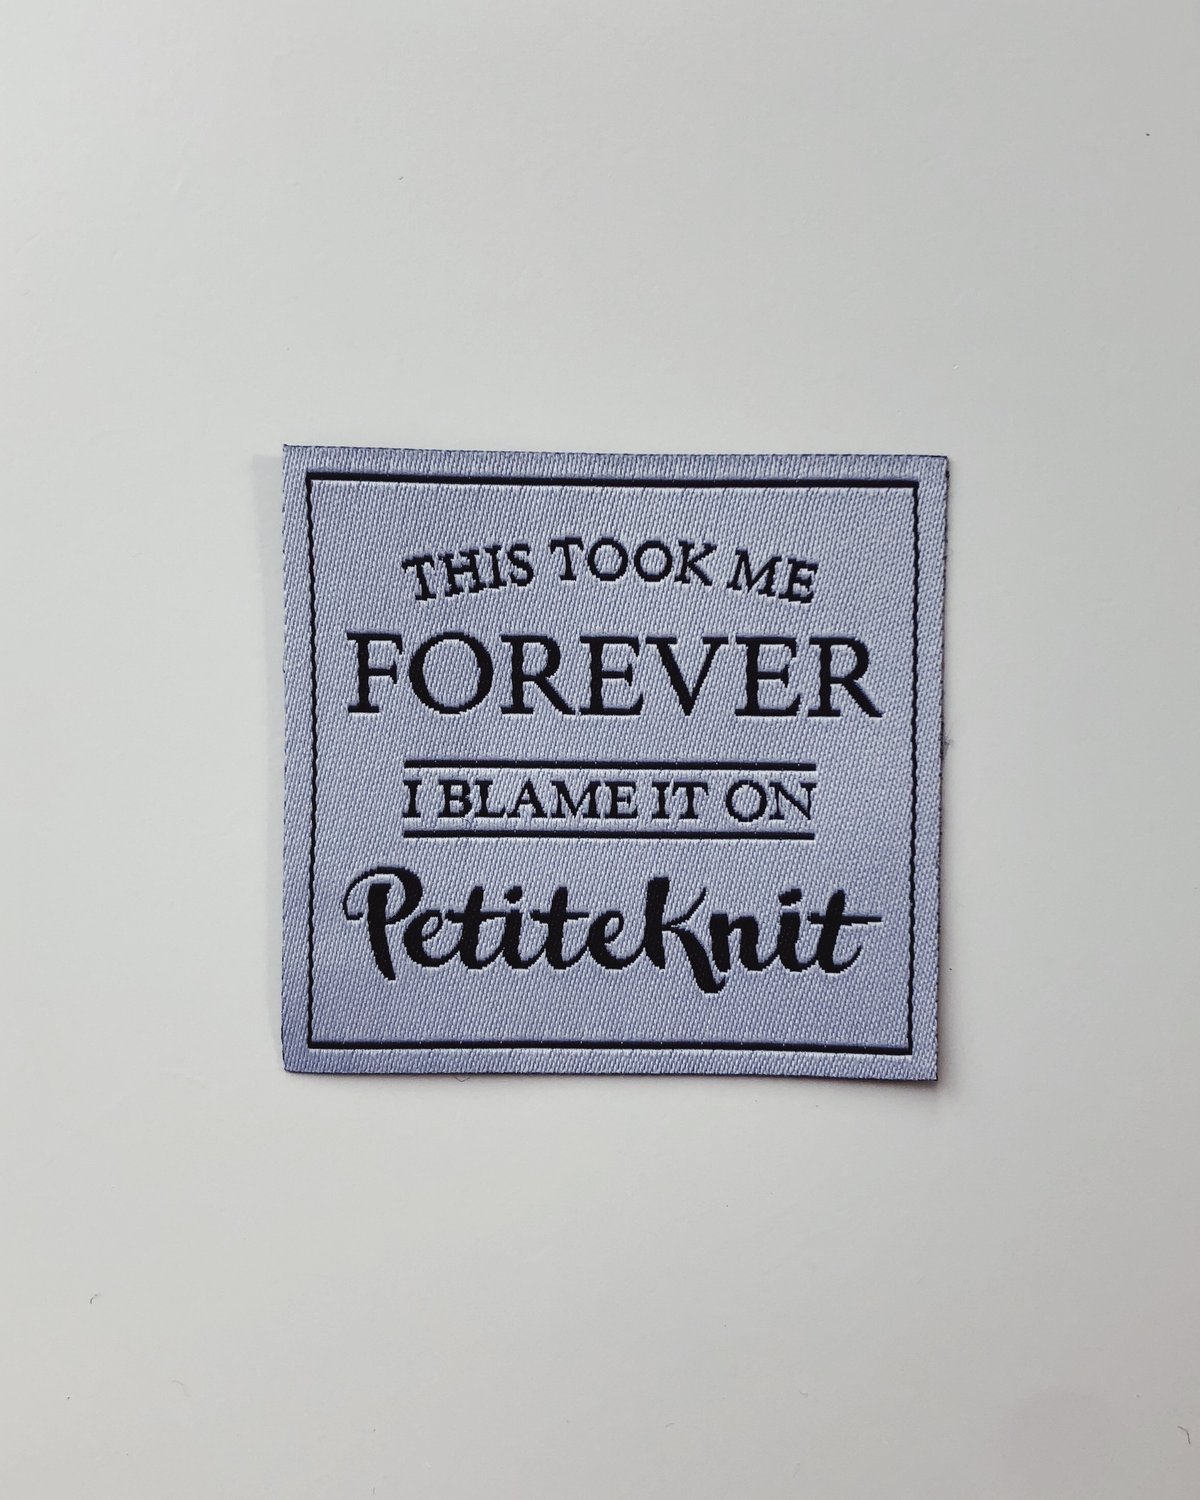 "This Took Me Forever" by PetiteKnit -kangasmerkki